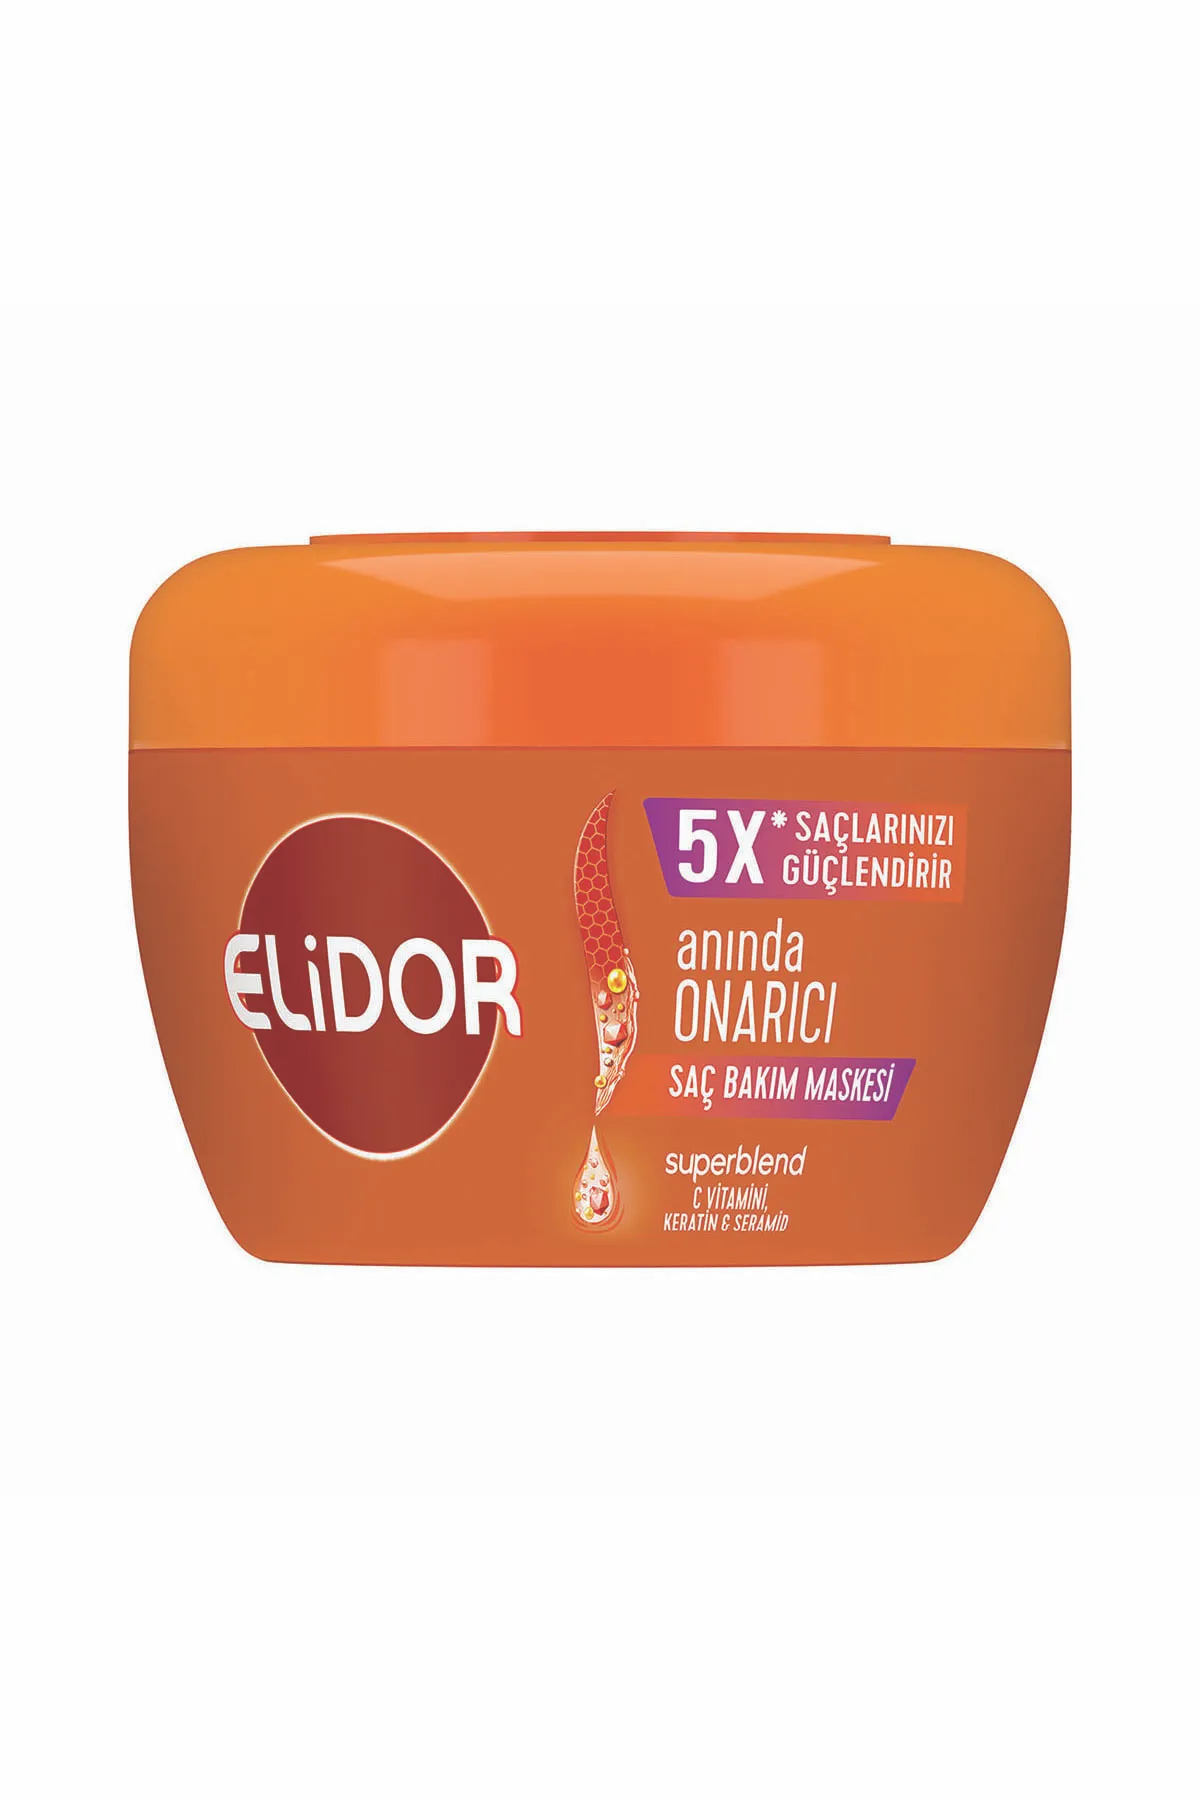 Elidor 5X Anında Onarıcı Saç Baım Maskesi 160 ml - 1